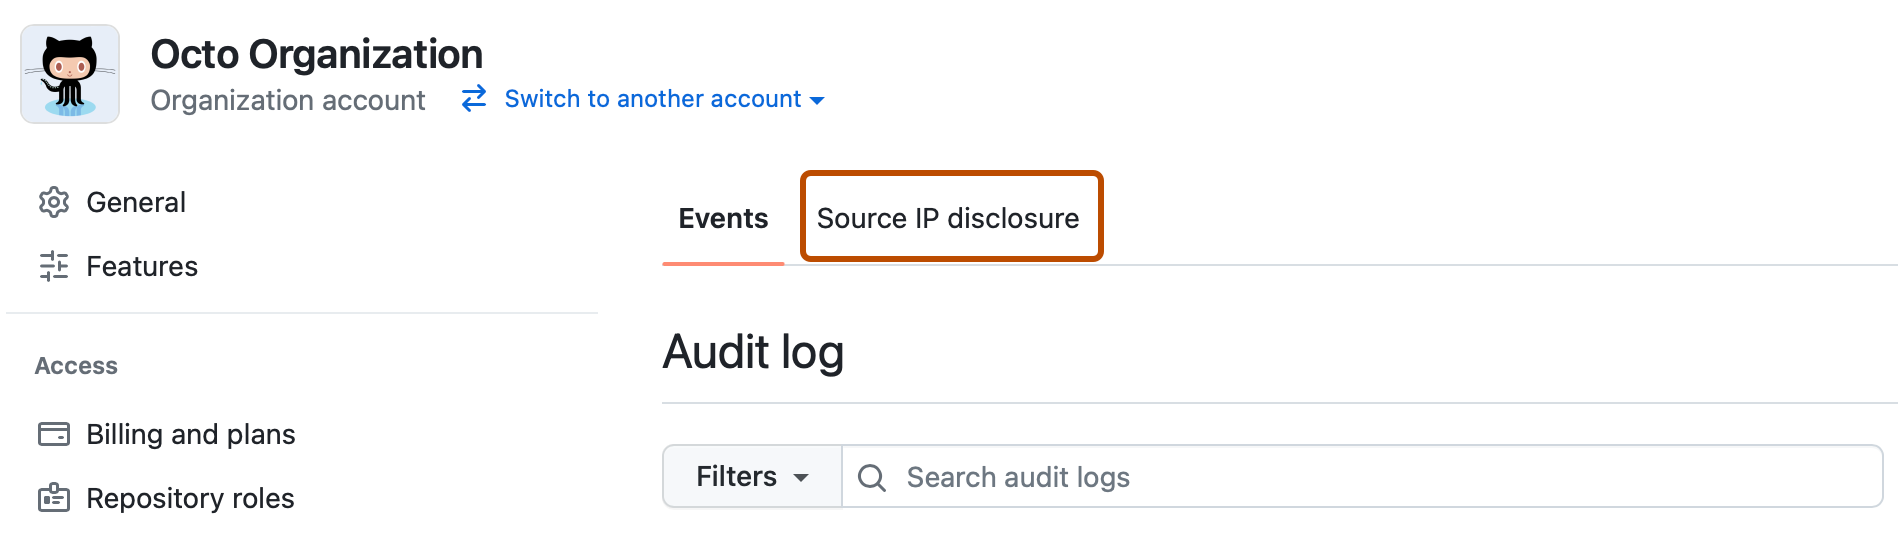 Captura de tela da página "Log de auditoria" de uma organização. Uma guia, rotulada como "Divulgação de IP de origem", é descrita em laranja escuro.